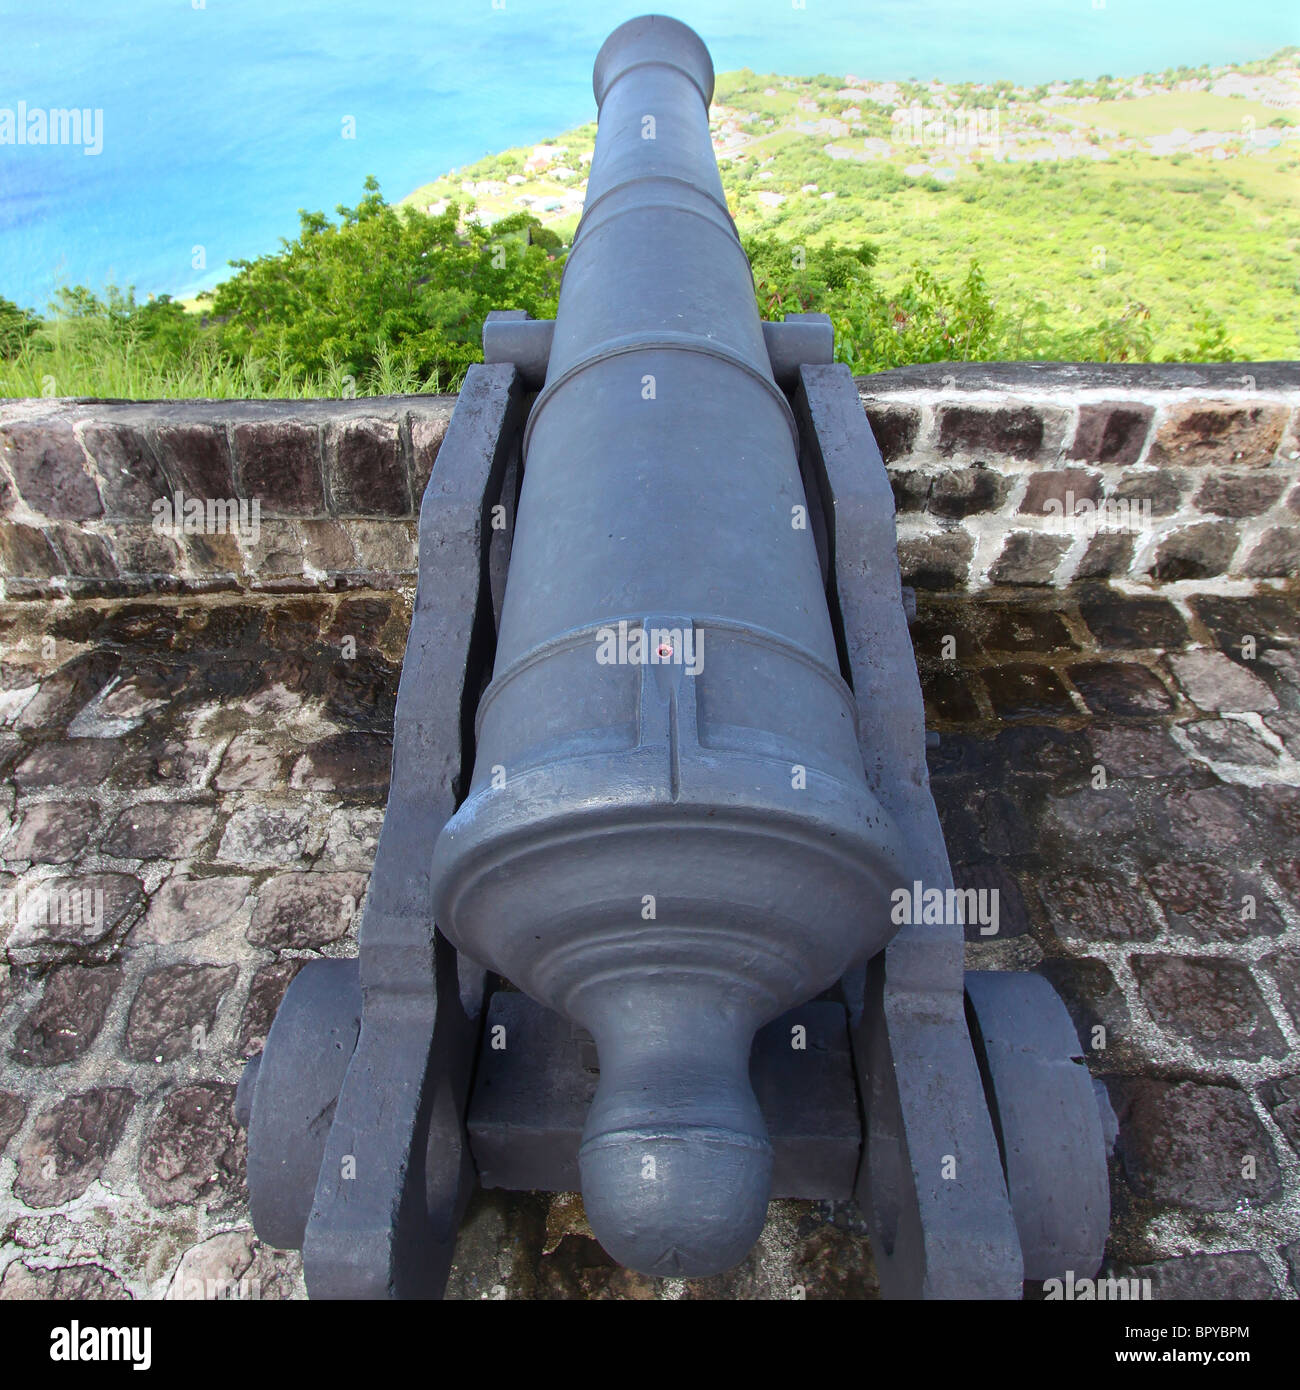 La forteresse de Brimstone Hill - St Kitts Banque D'Images